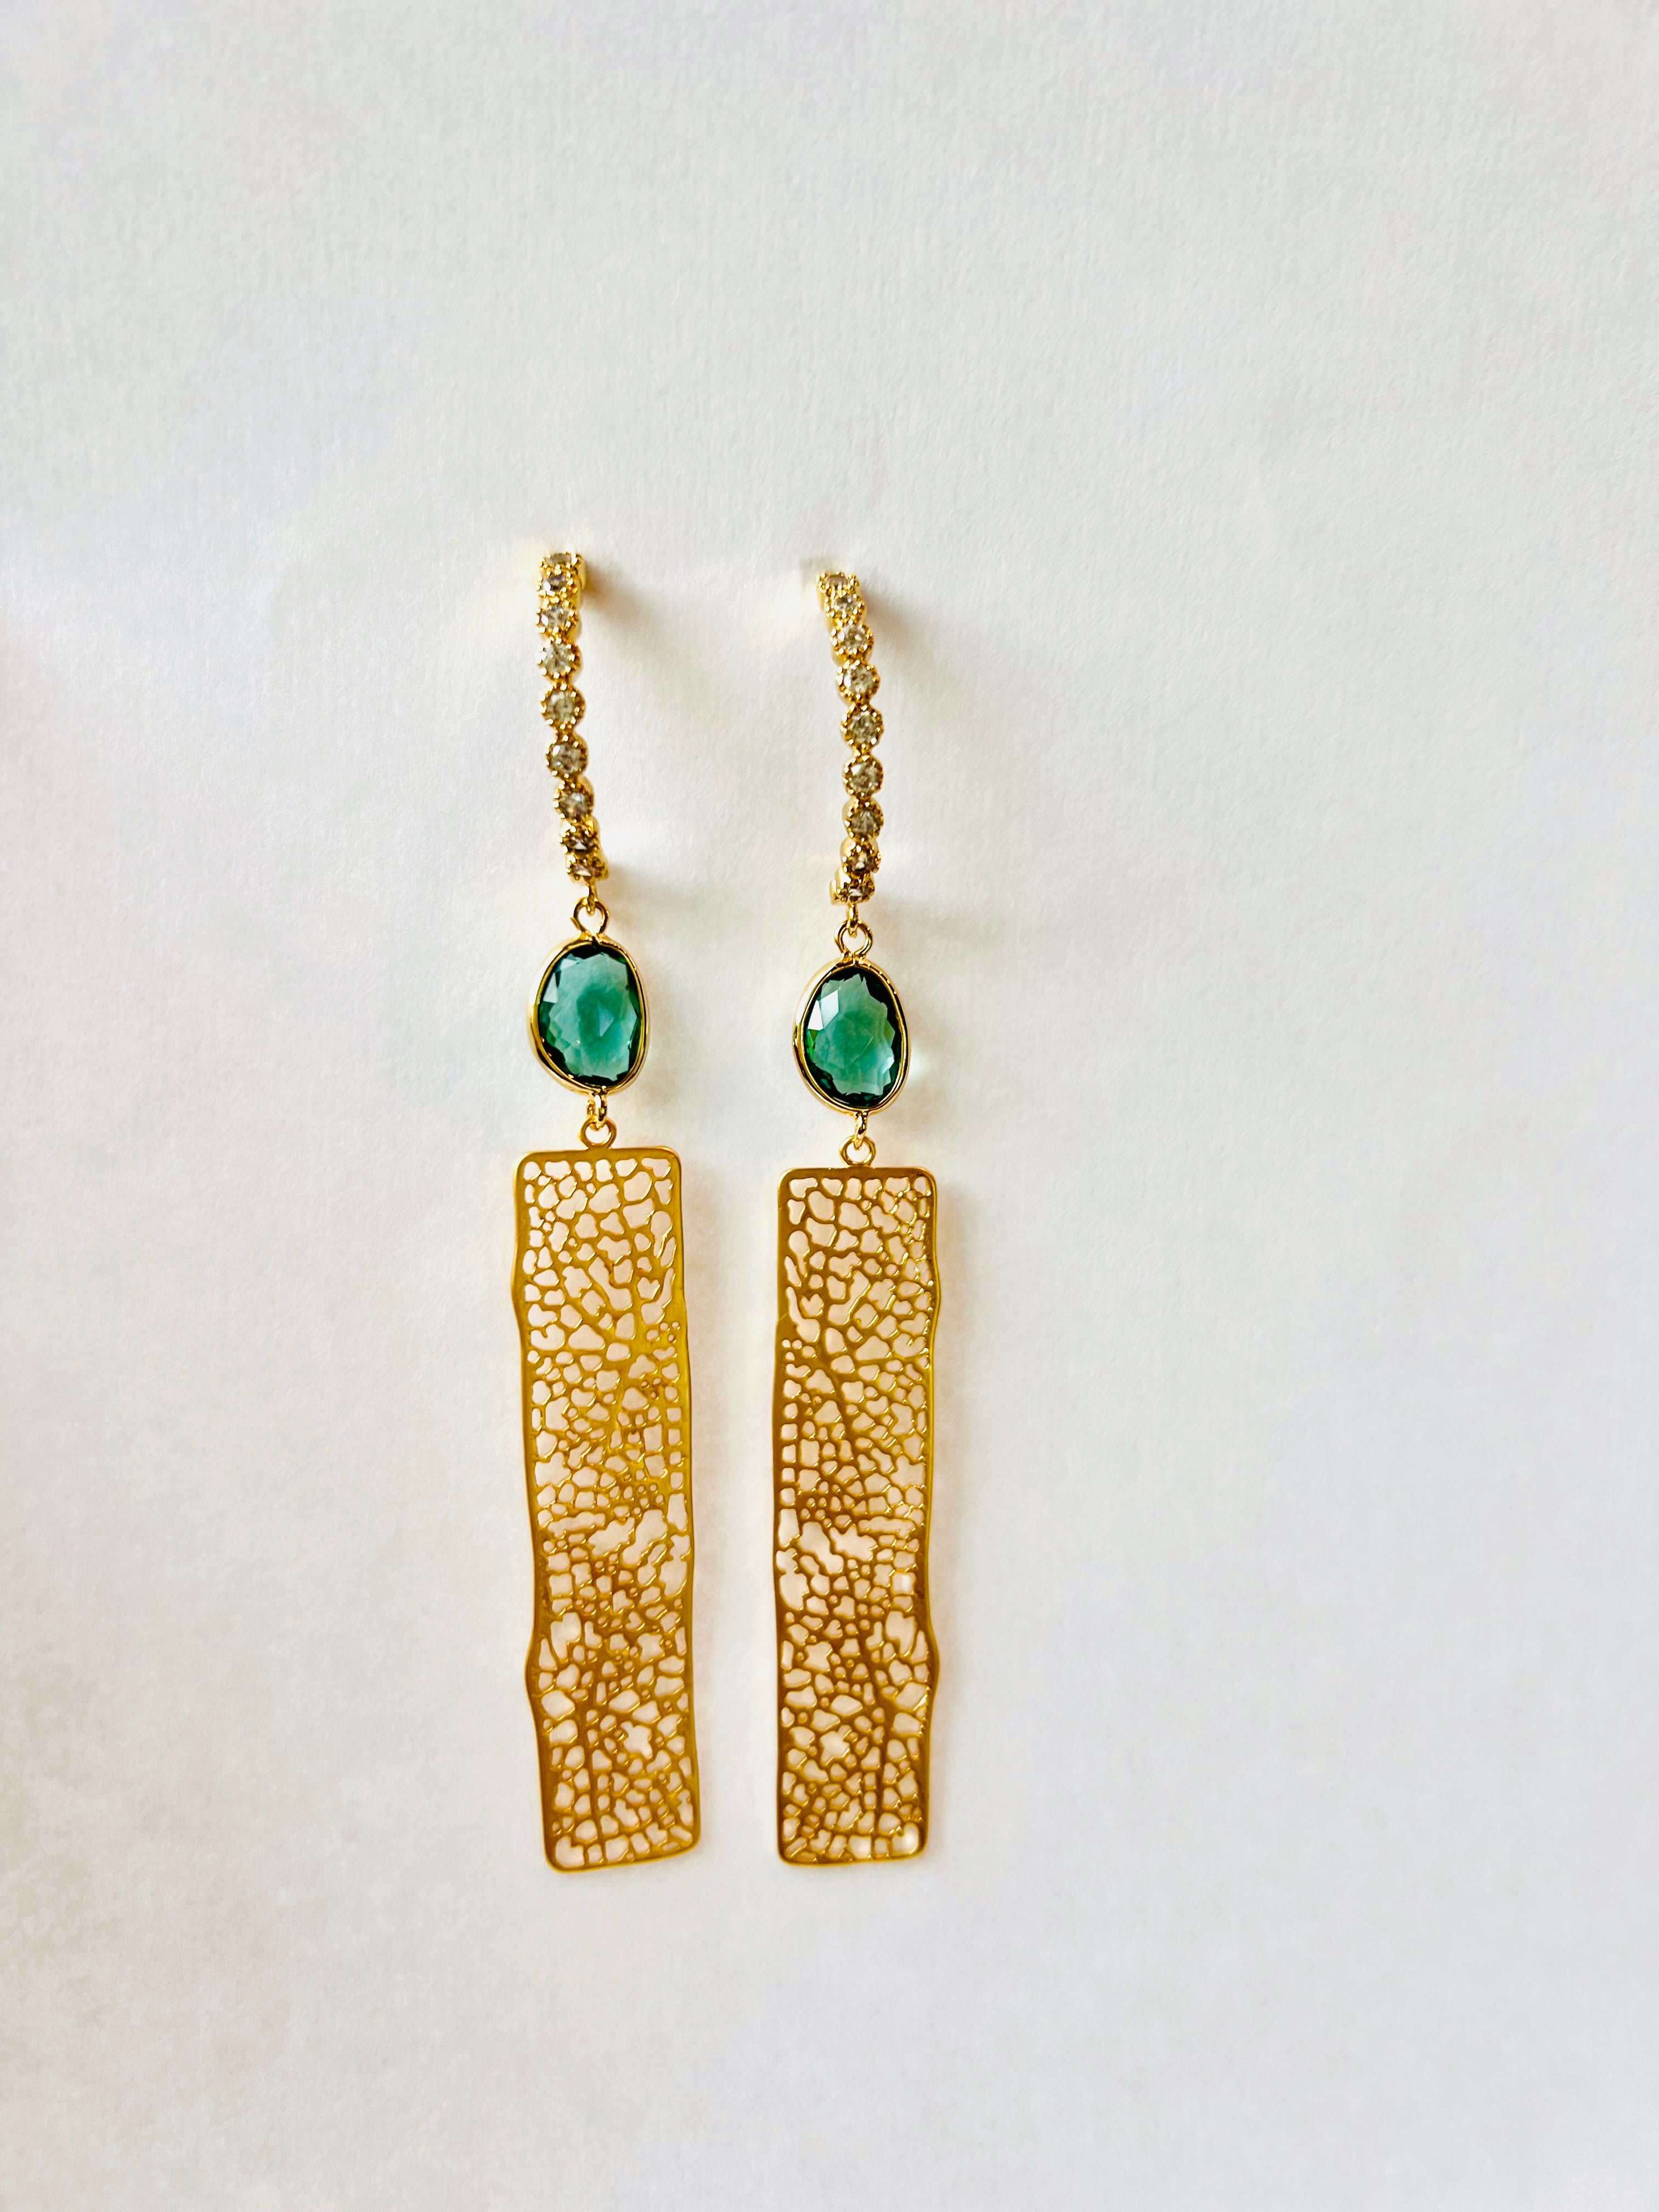 Gold Green Tourmaline Modern Art Earrings